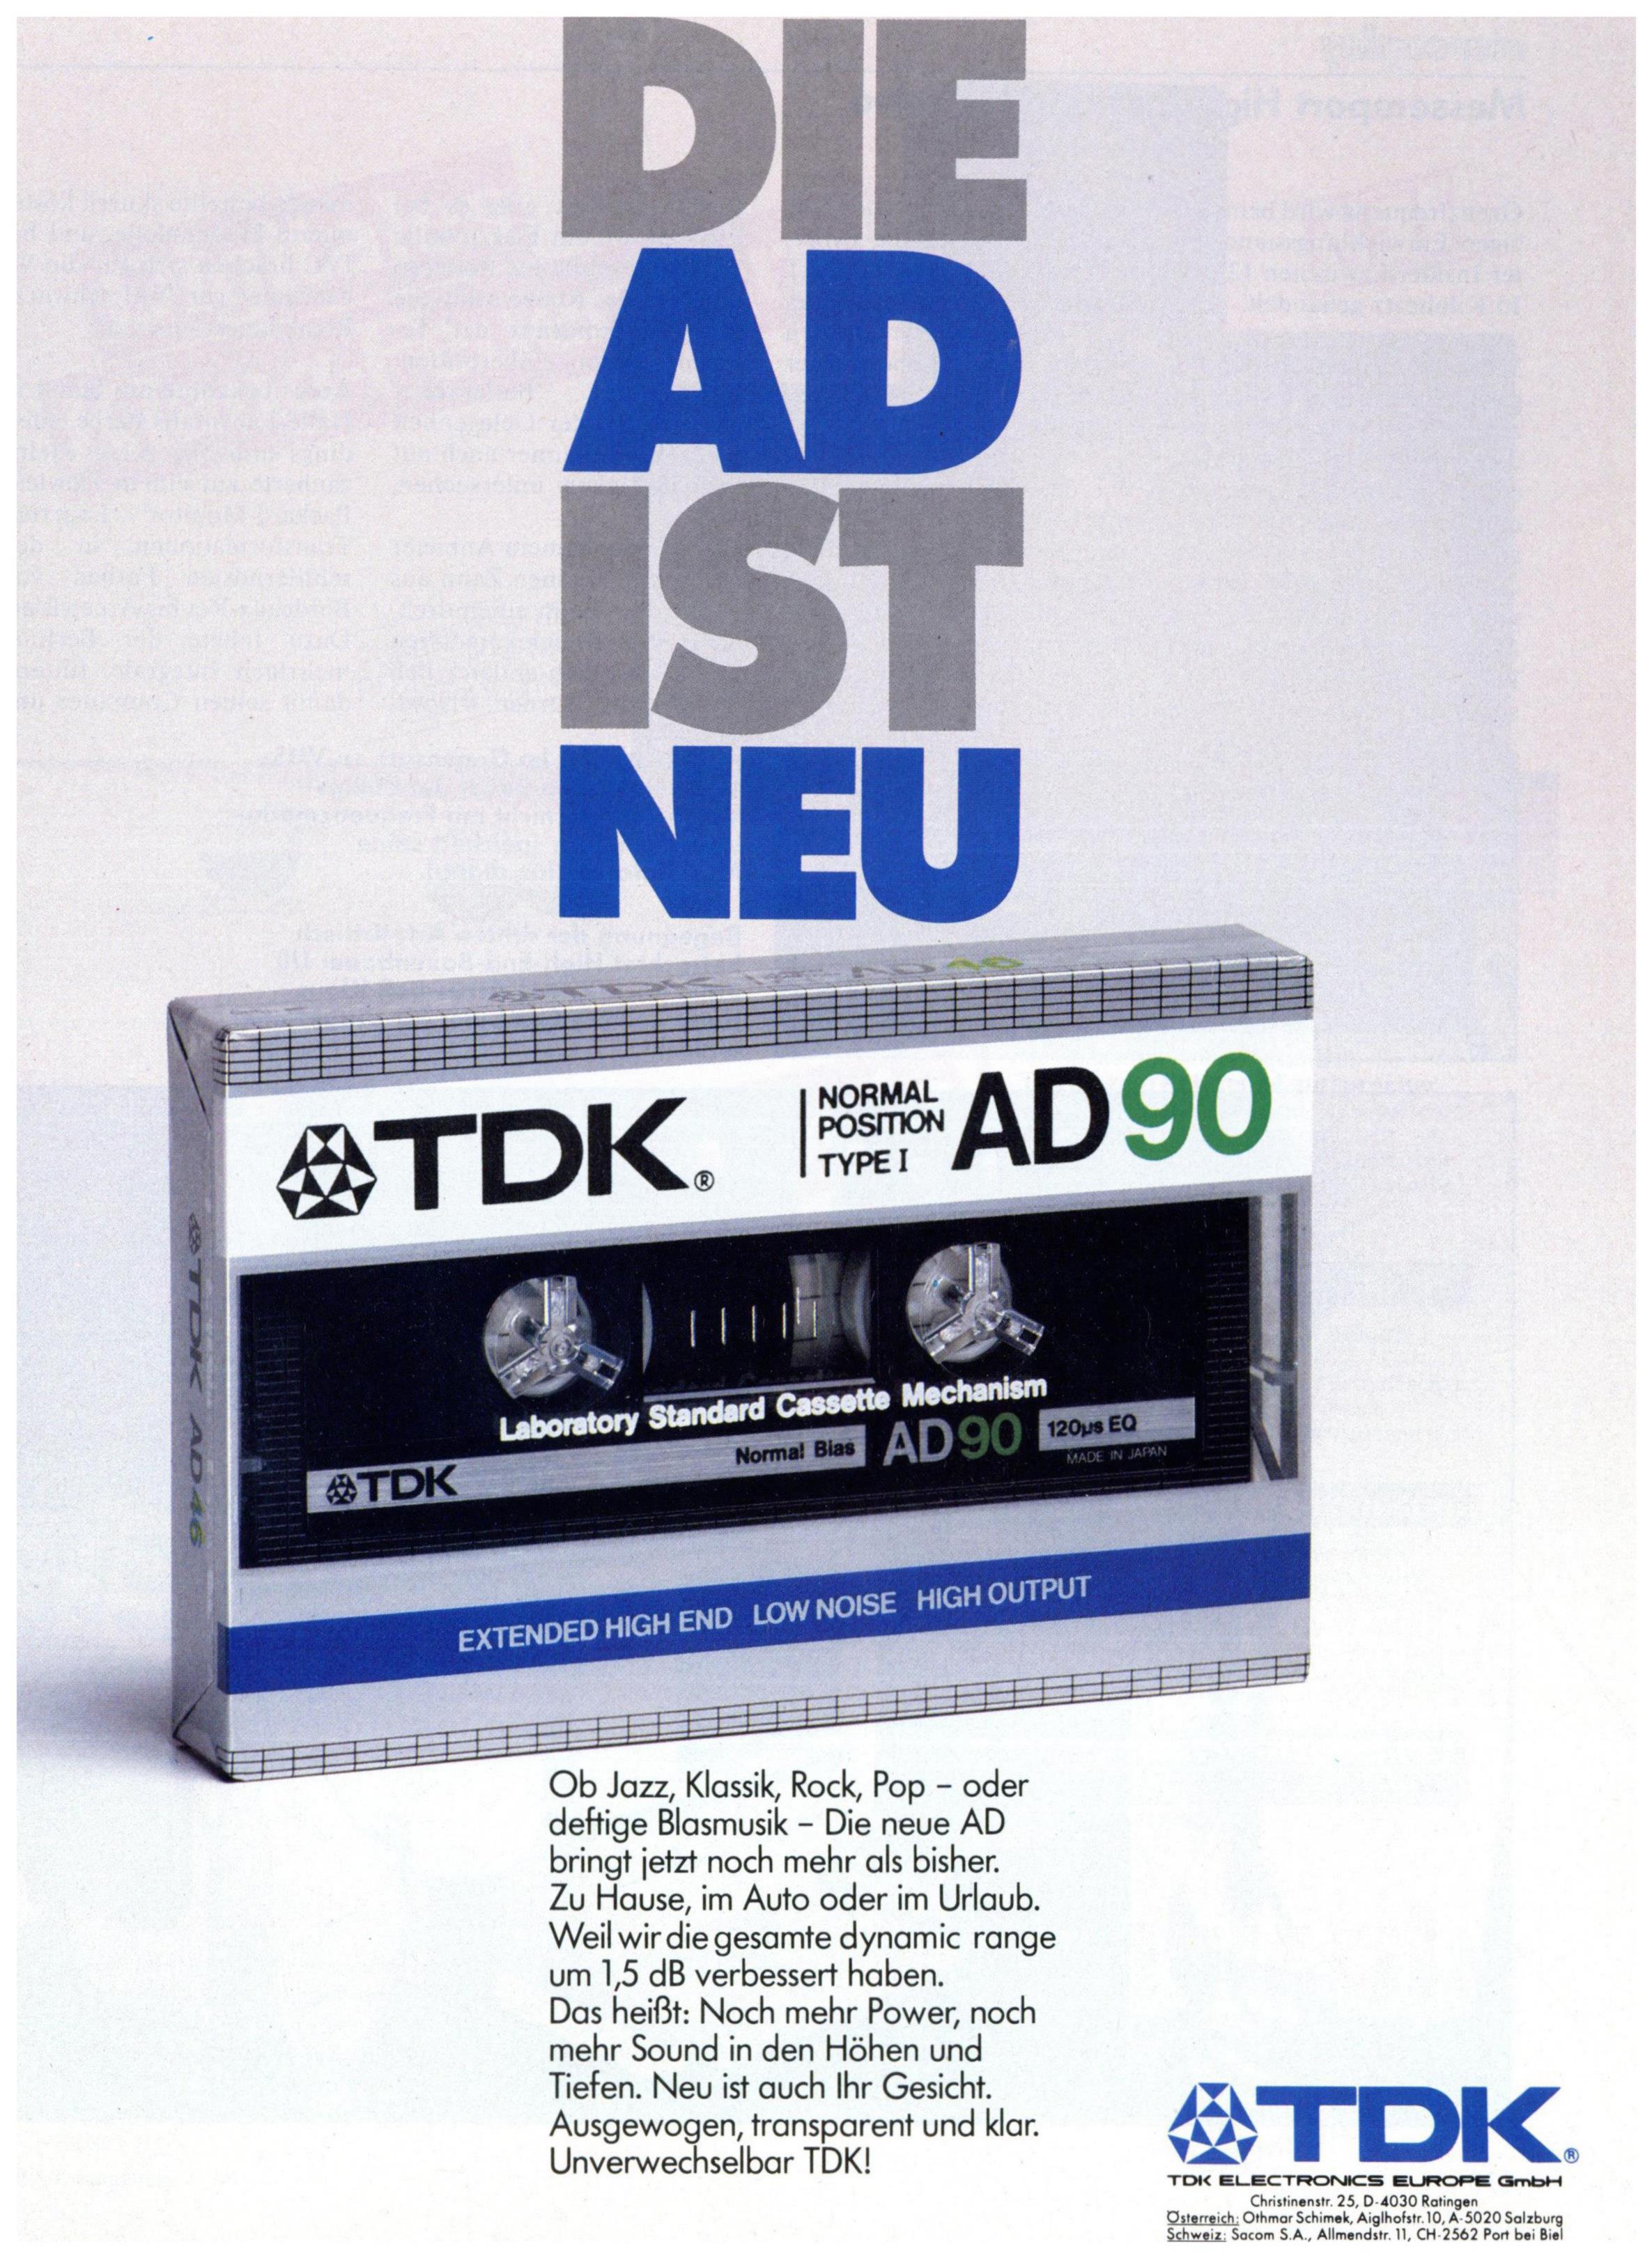 TDK 1984 0.jpg